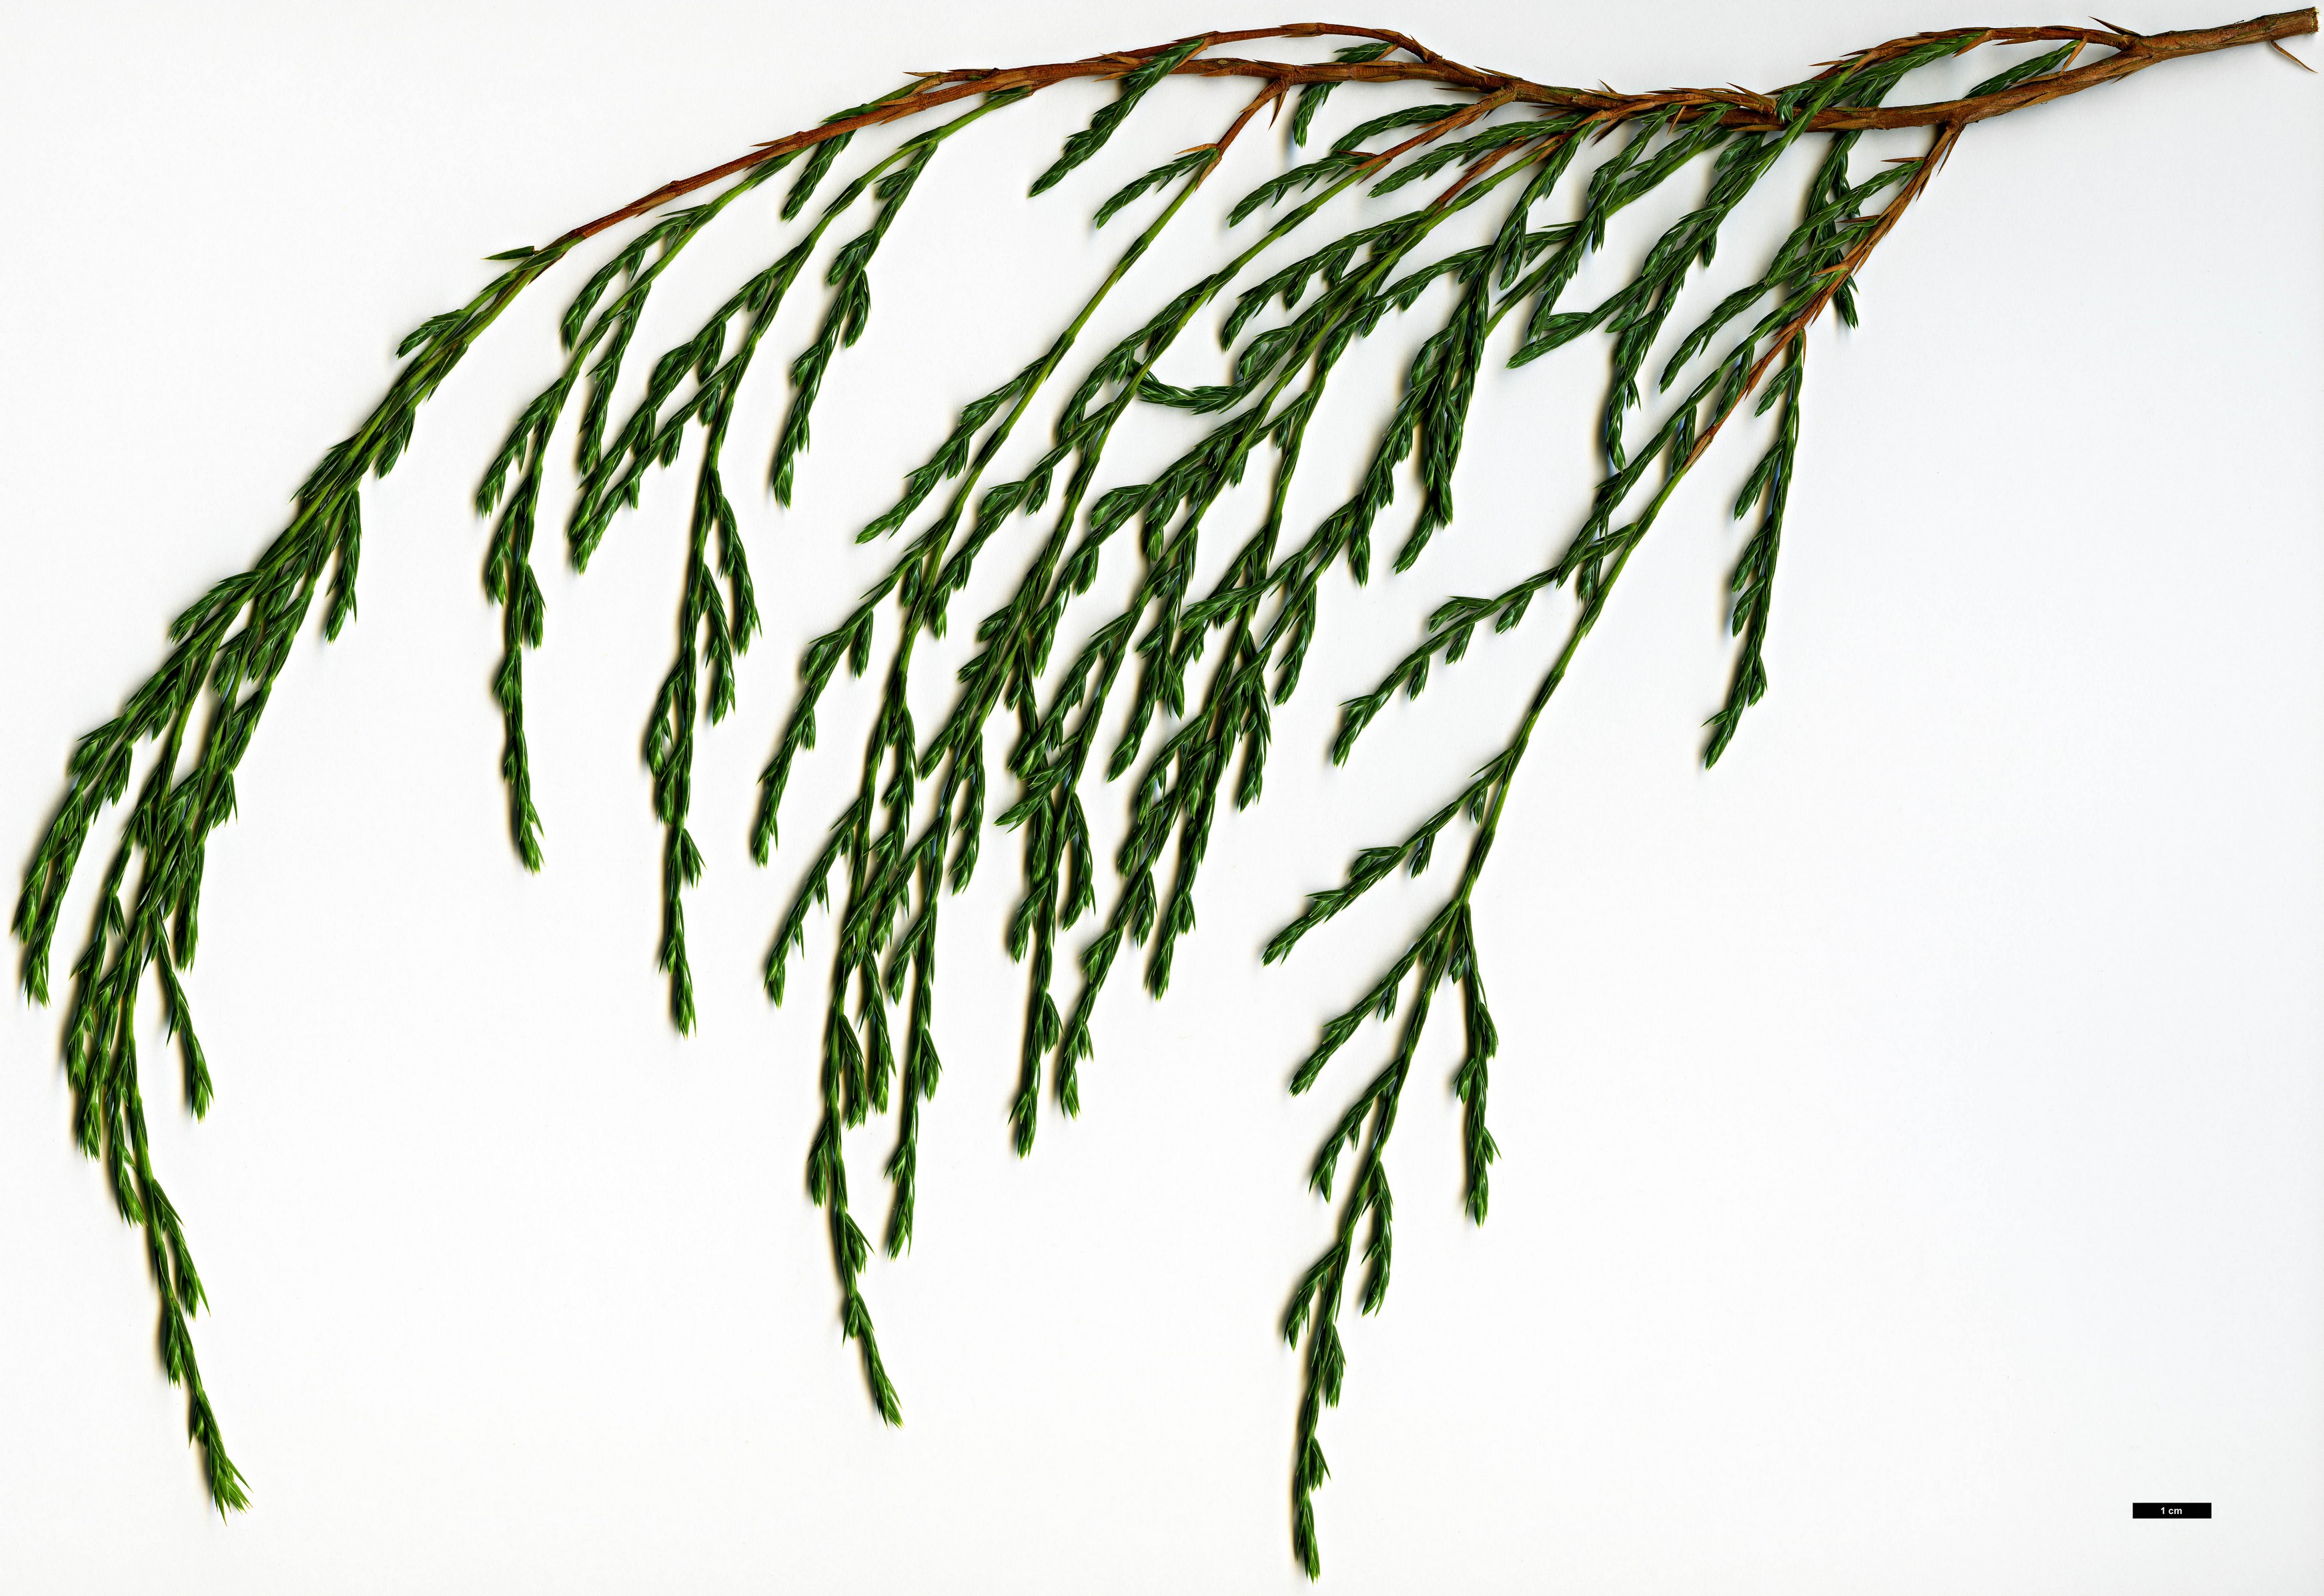 High resolution image: Family: Cupressaceae - Genus: Juniperus - Taxon: recurva - SpeciesSub: var. recurva